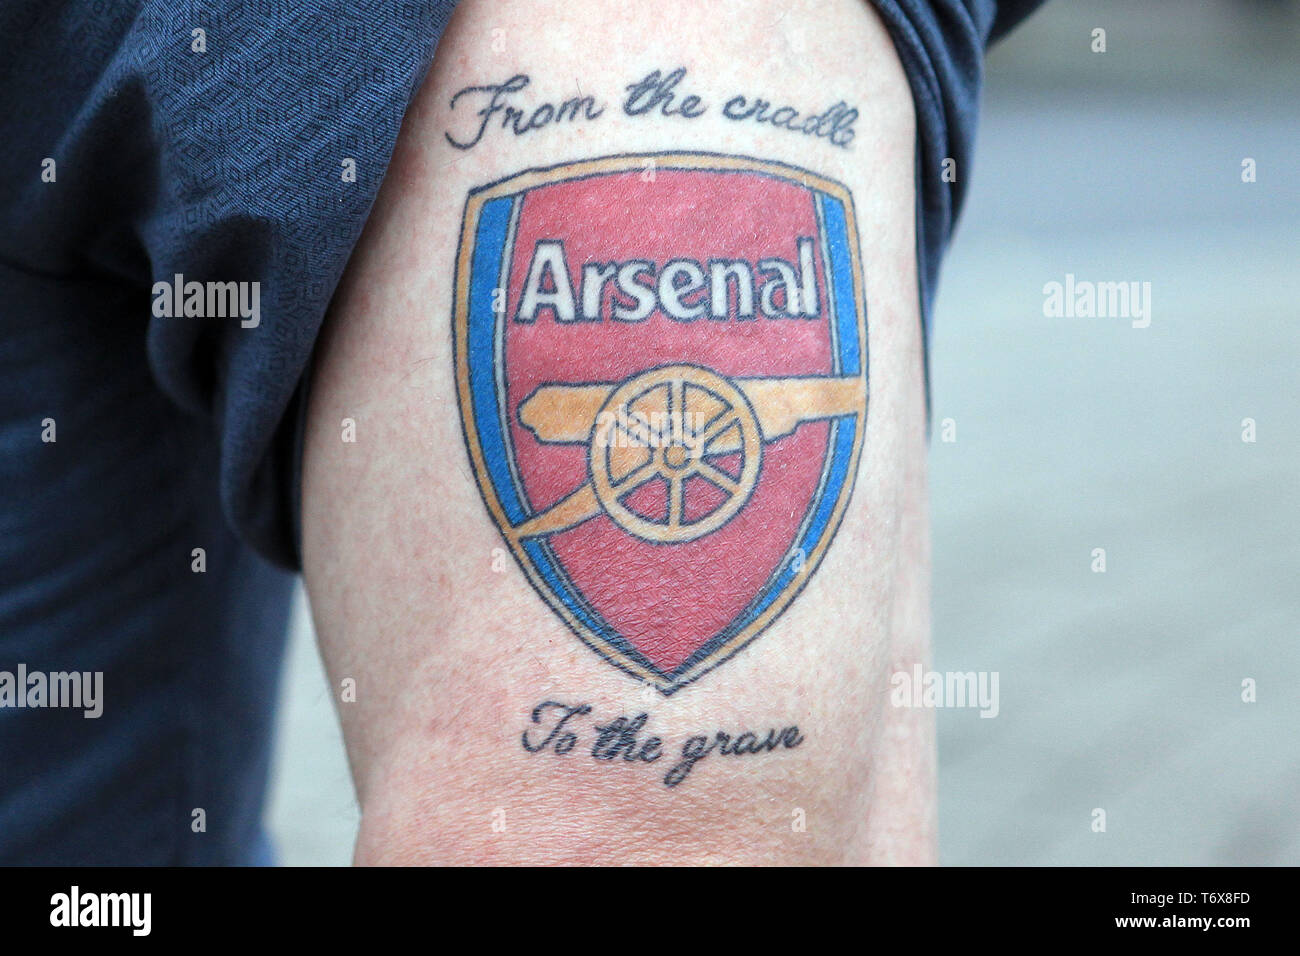 Arsenal Fc Tattoo Designs